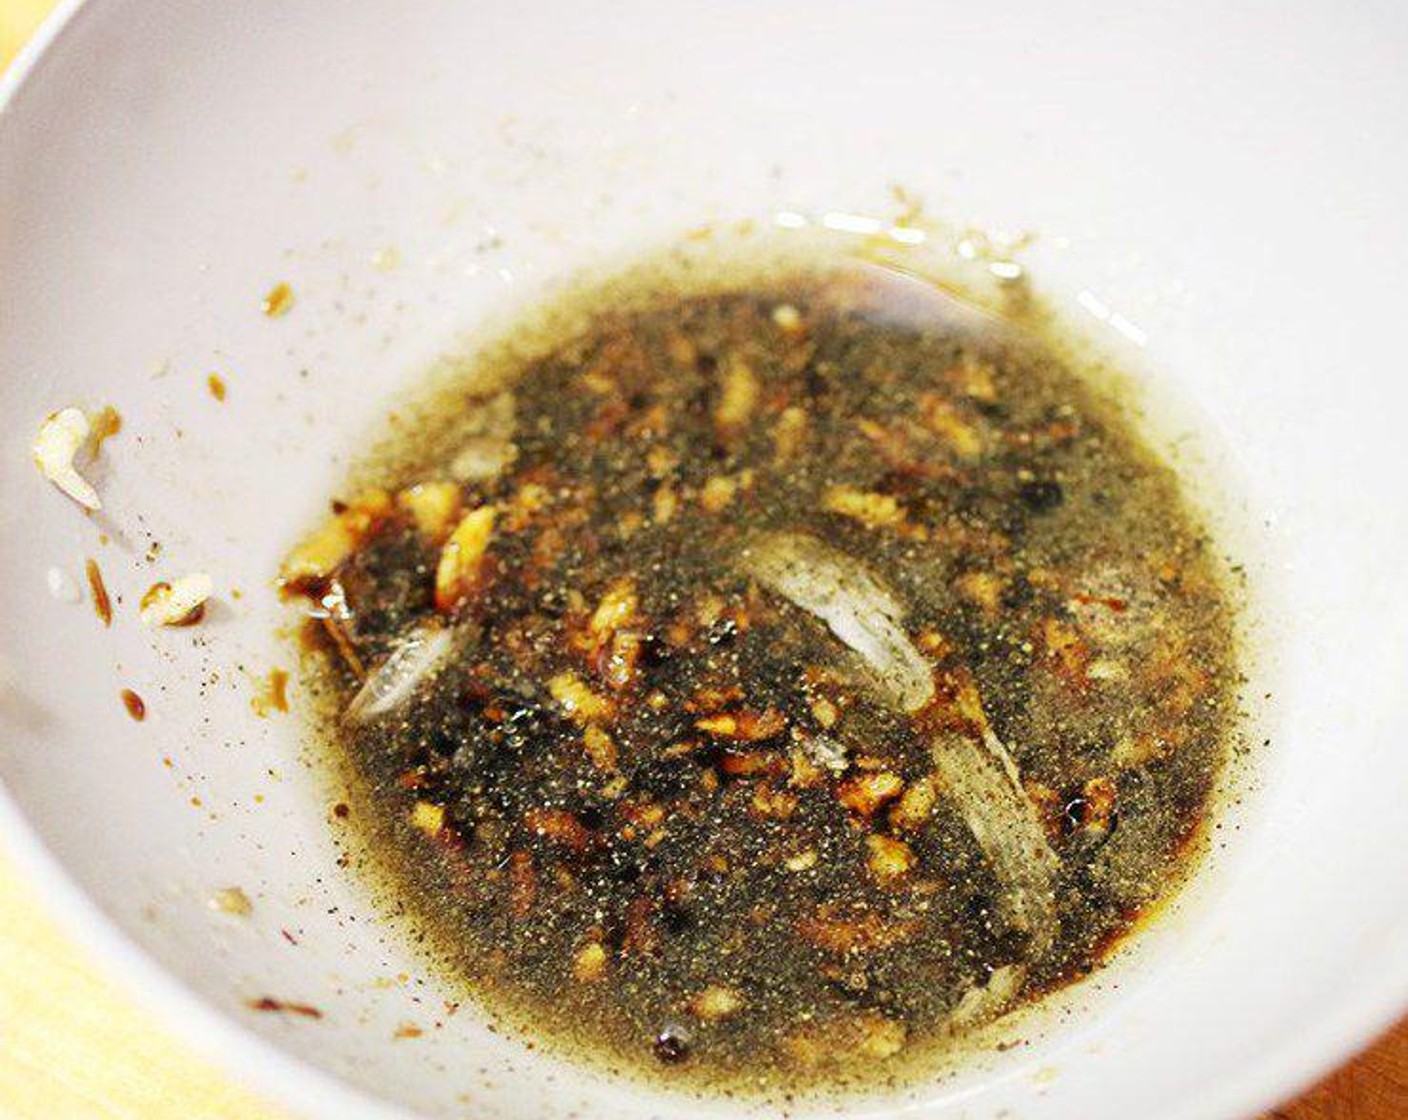 step 2 Mix Garlic (1 clove), Light Soy Sauce (2 Tbsp), Dark Soy Sauce (1 Tbsp), Mirin (1 Tbsp), Salt (1/4 tsp), and Ground Black Pepper (1 pinch) in a small mixing bowl, set aside.